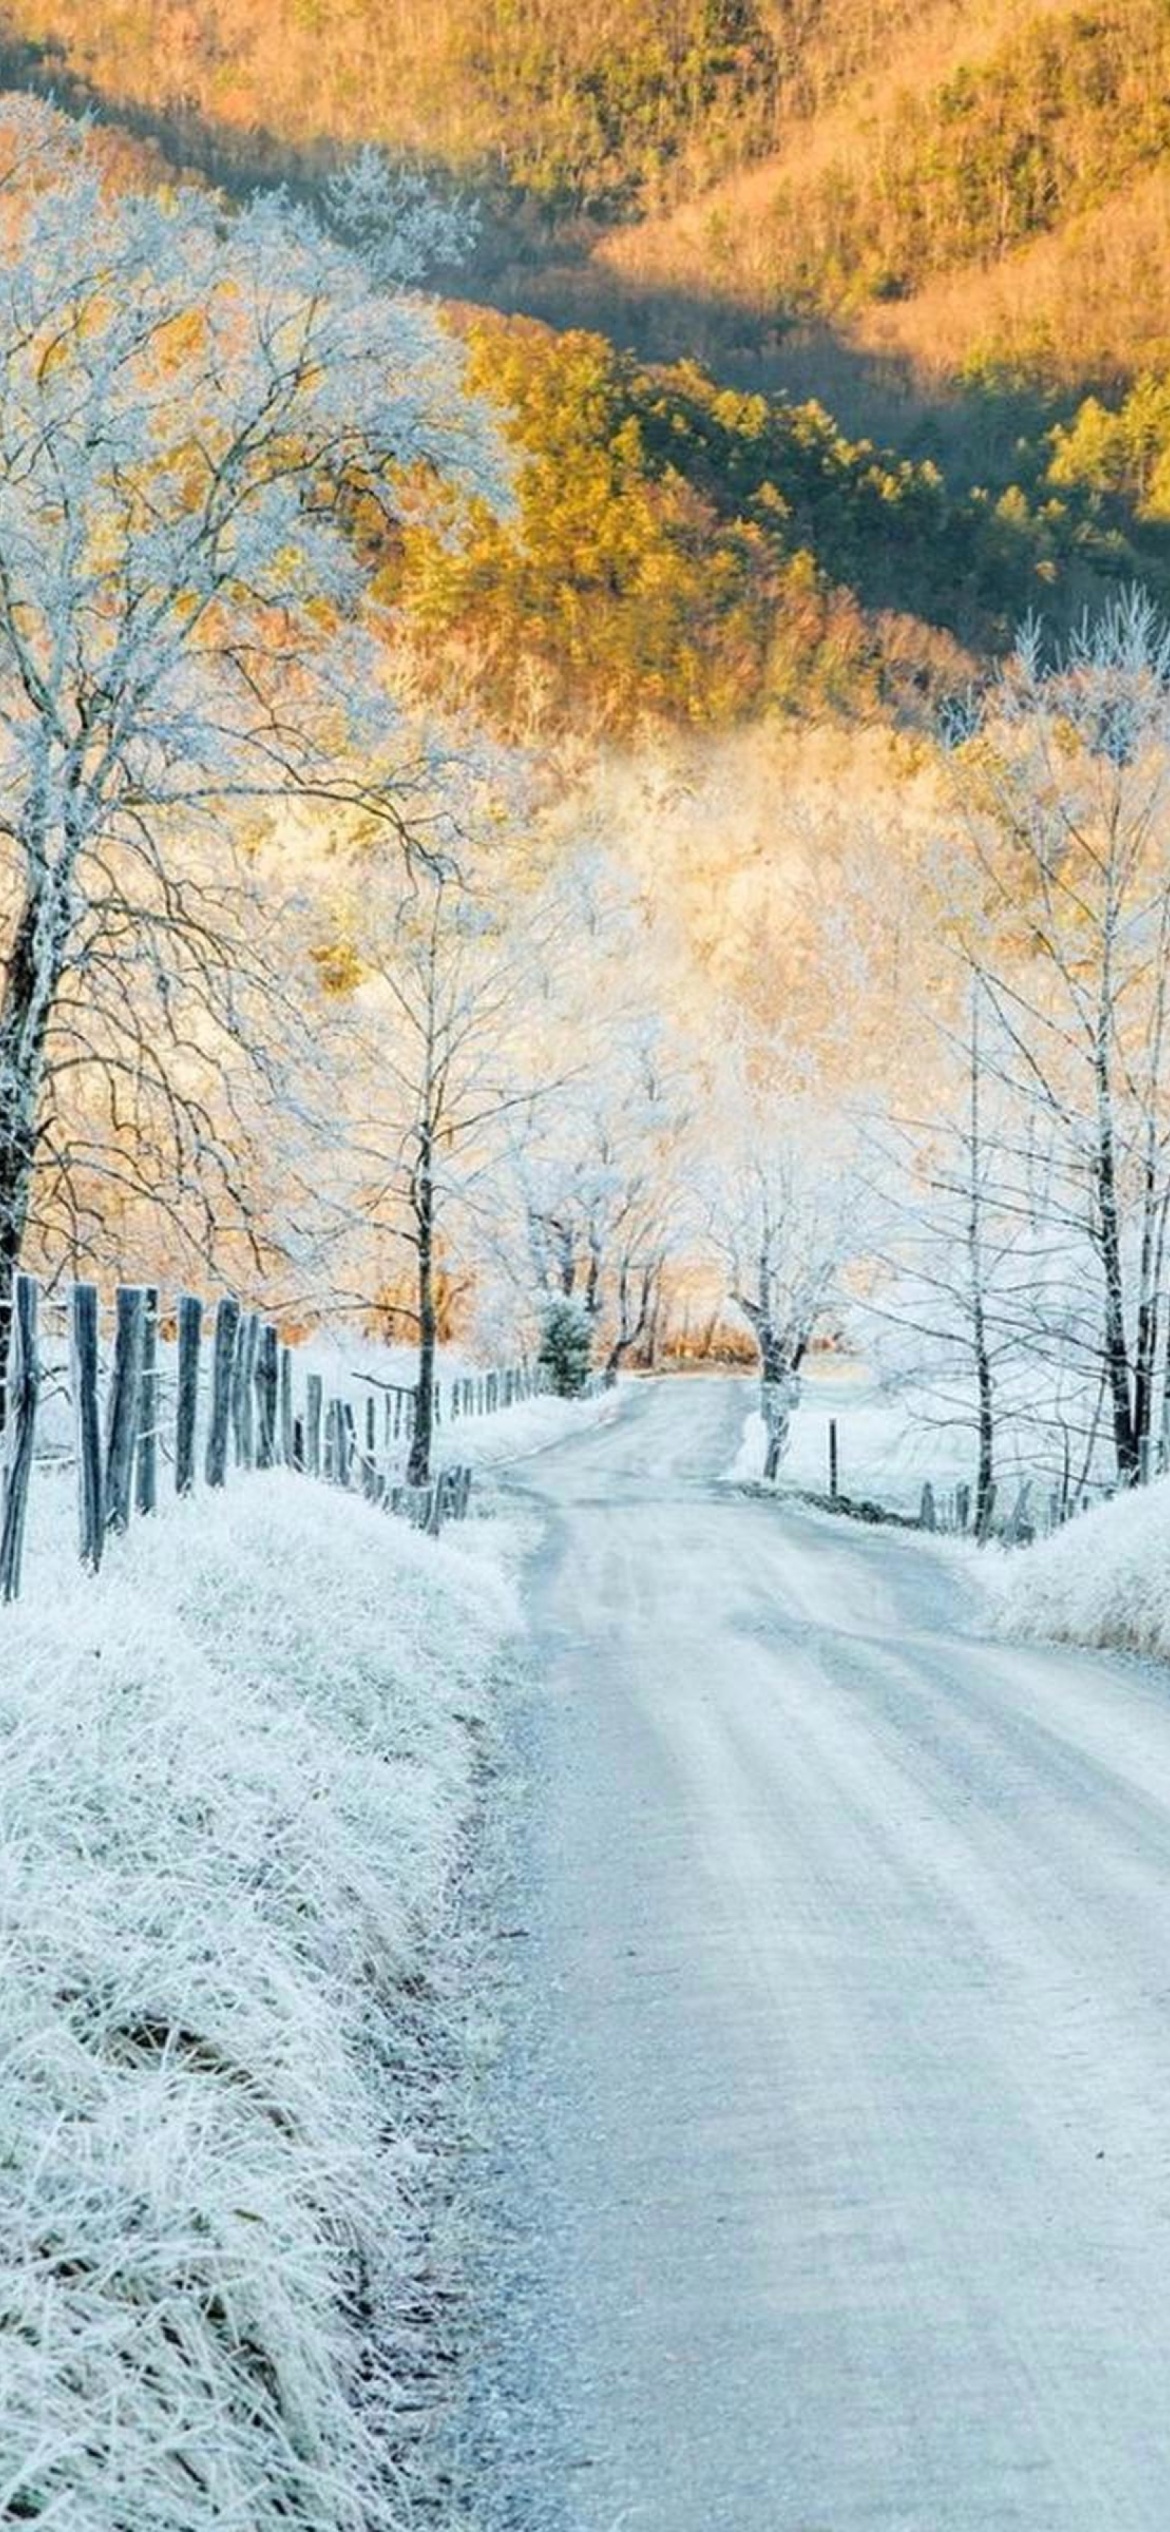 Winter road in frost wallpaper 1170x2532